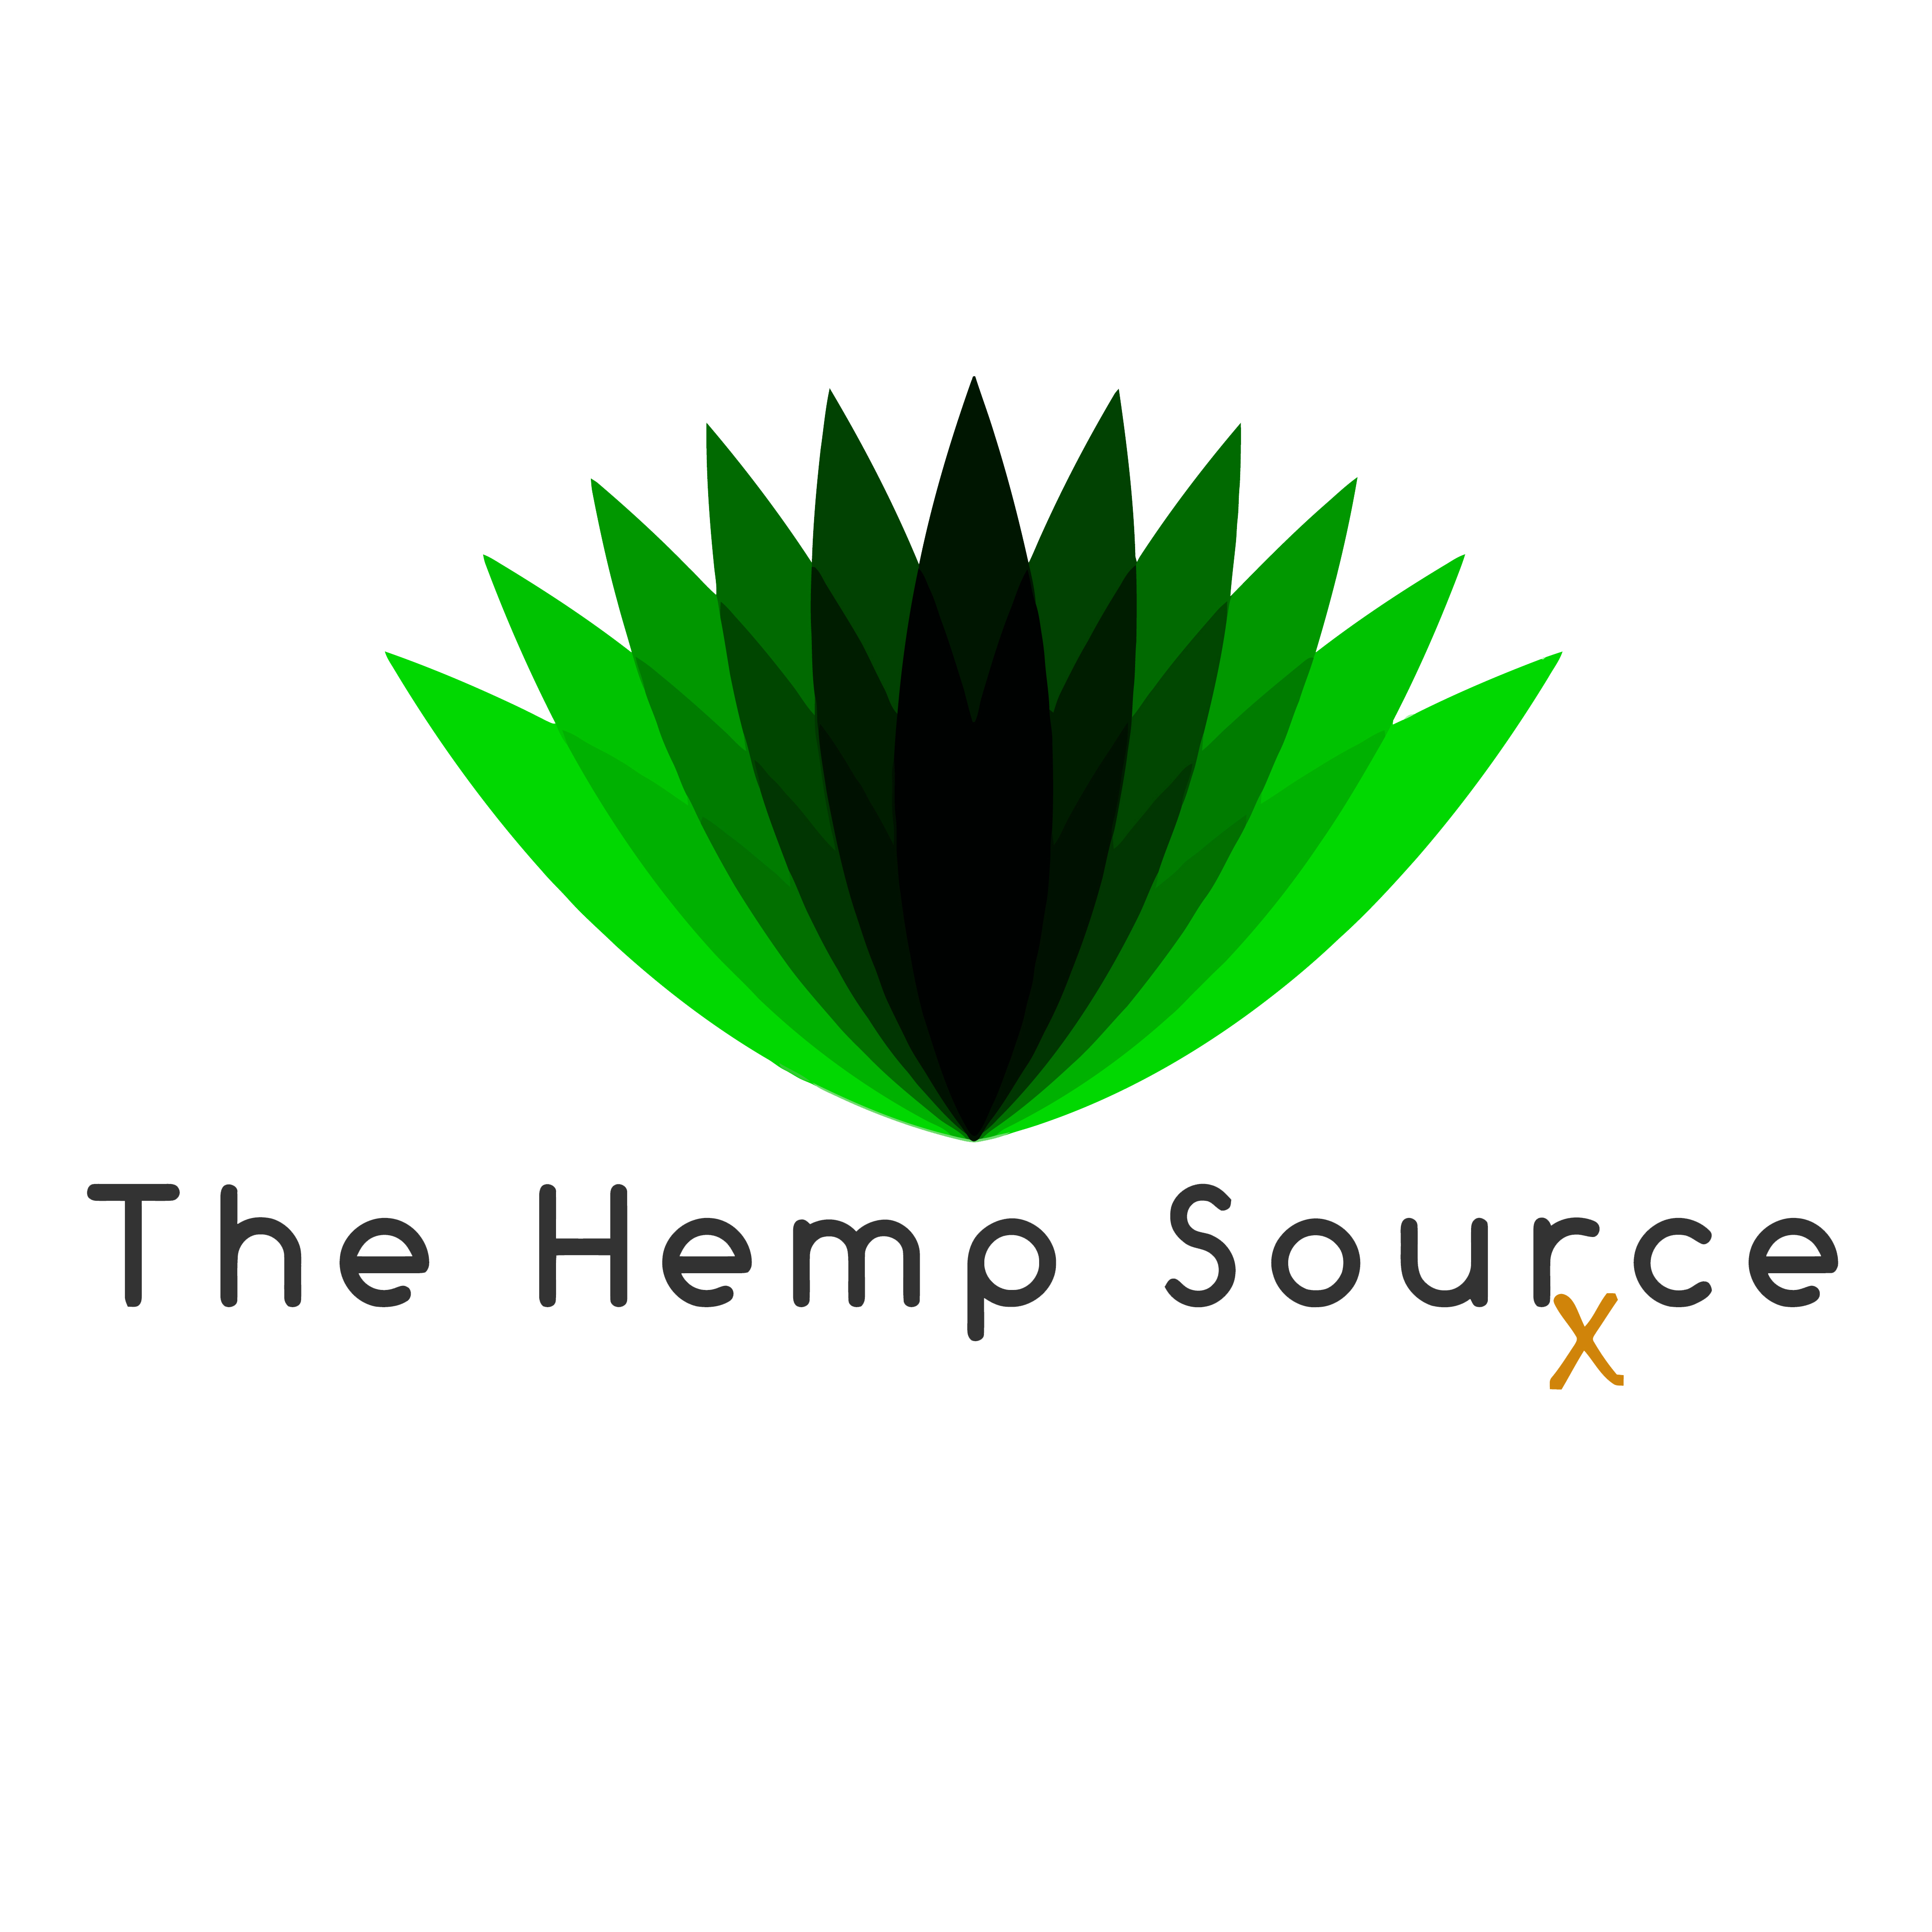 The Hemp Source